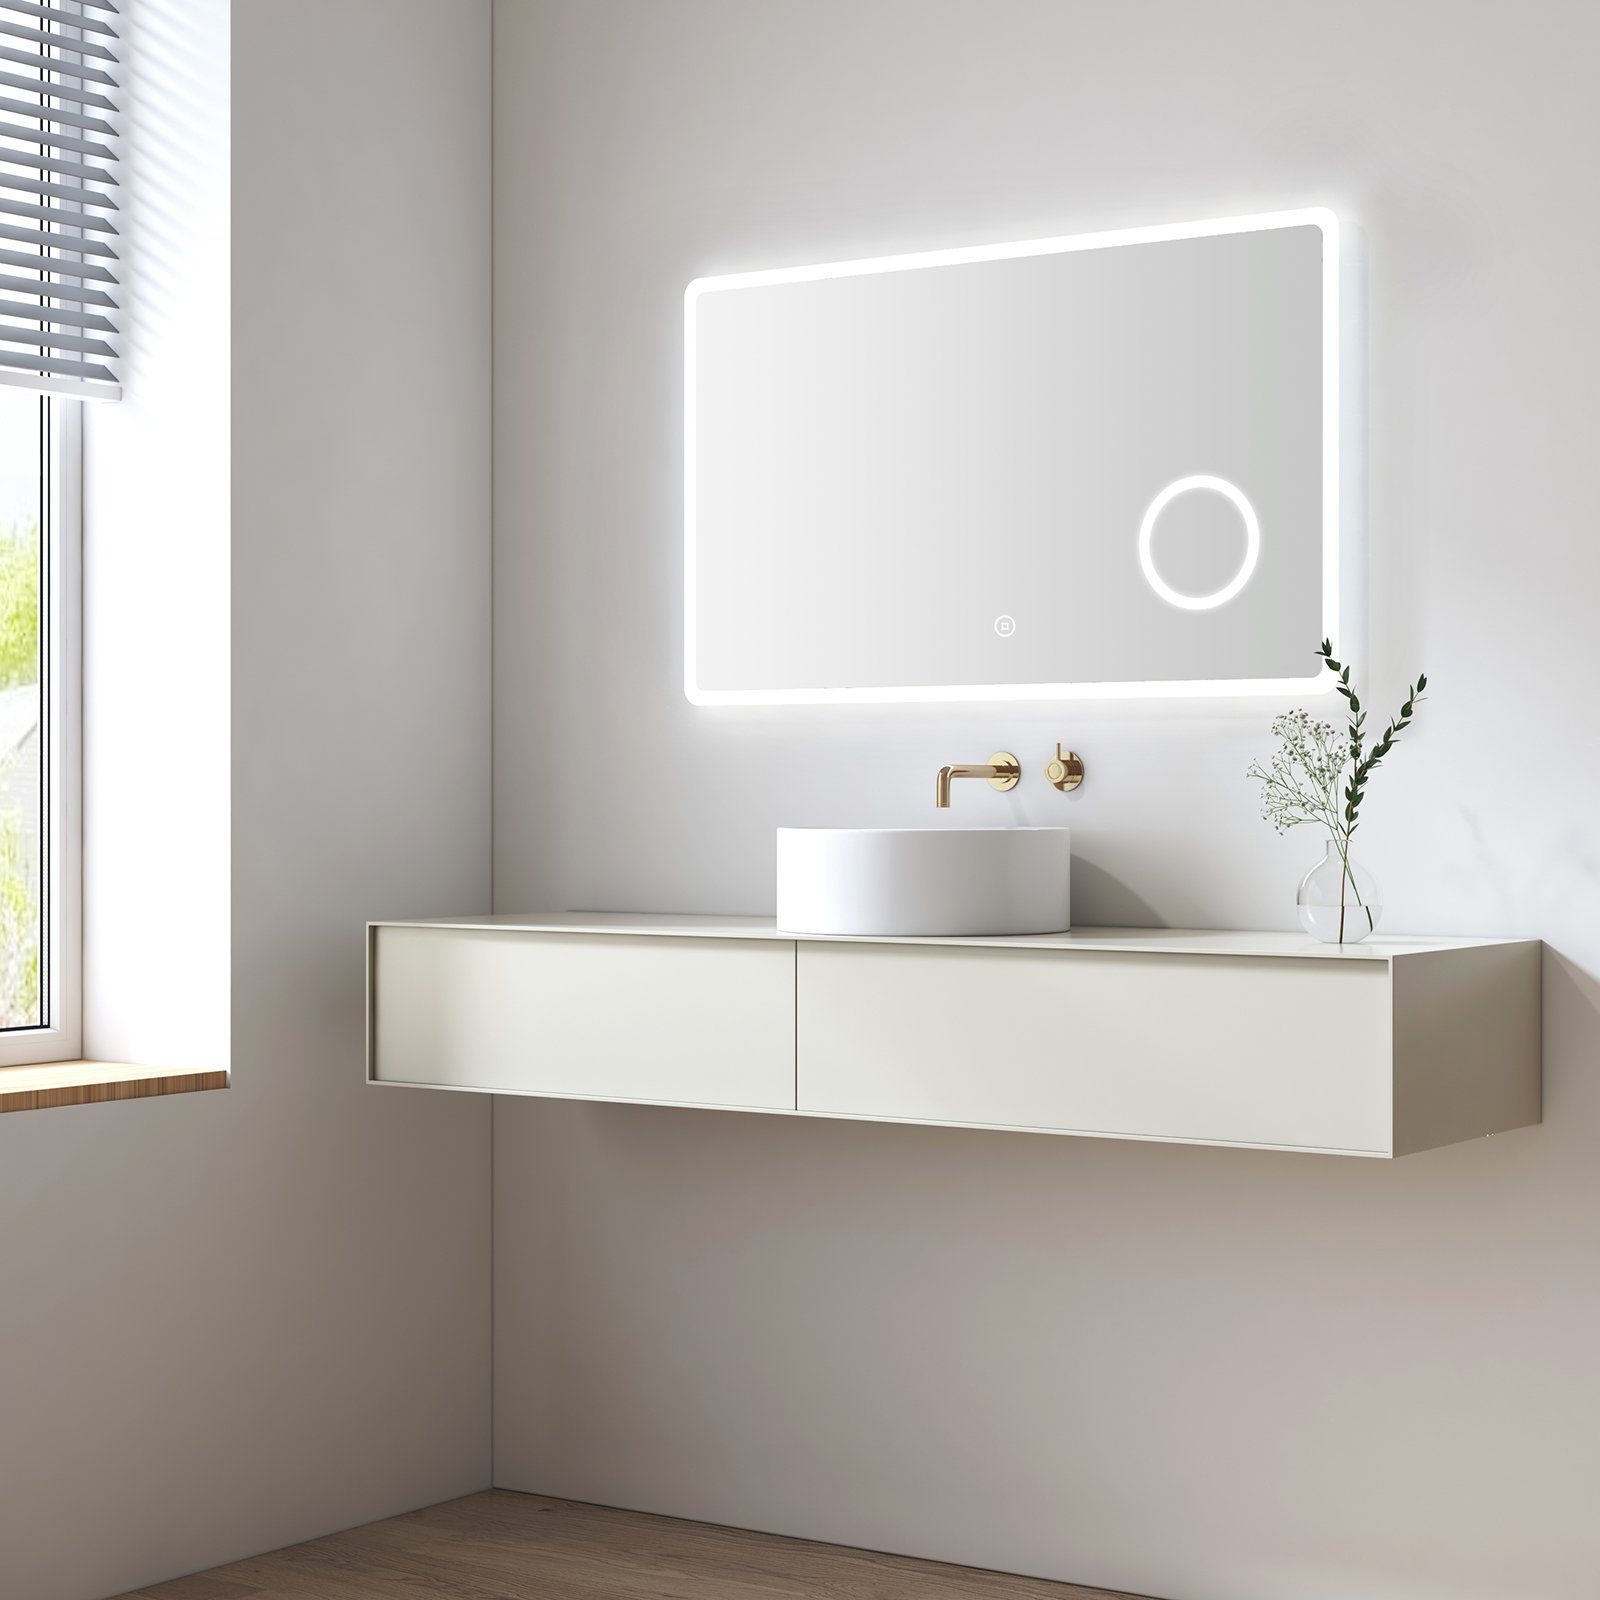 mit S'AFIELINA 100x60cm,Kaltweiß Badspiegel Beleuchtung Vergrößerung,IP Wandspiegel 6500K,Touchschalter,3-fach Led Badspiegel, Badspiegel 54